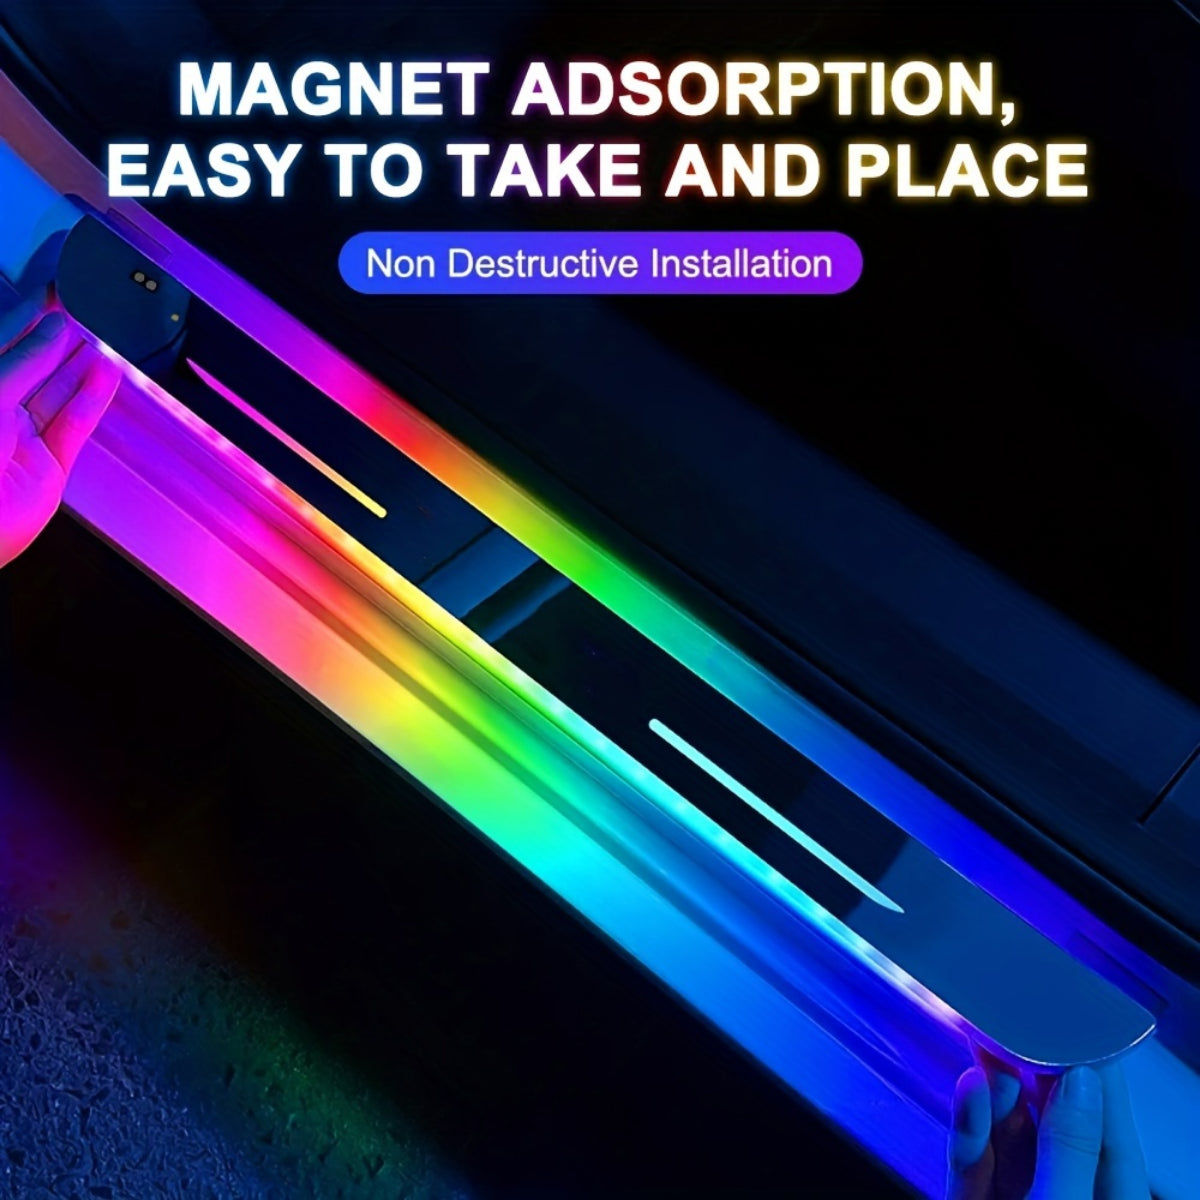 4 teile/satz verkabelung freie LED-Autotür-Abstell lichter-RGB-Auto-Pedal-Pathway-Licht mit drahtlosem USB-Neon-Willkommen mit freundlicher Genehmigung dekorativer Lichter